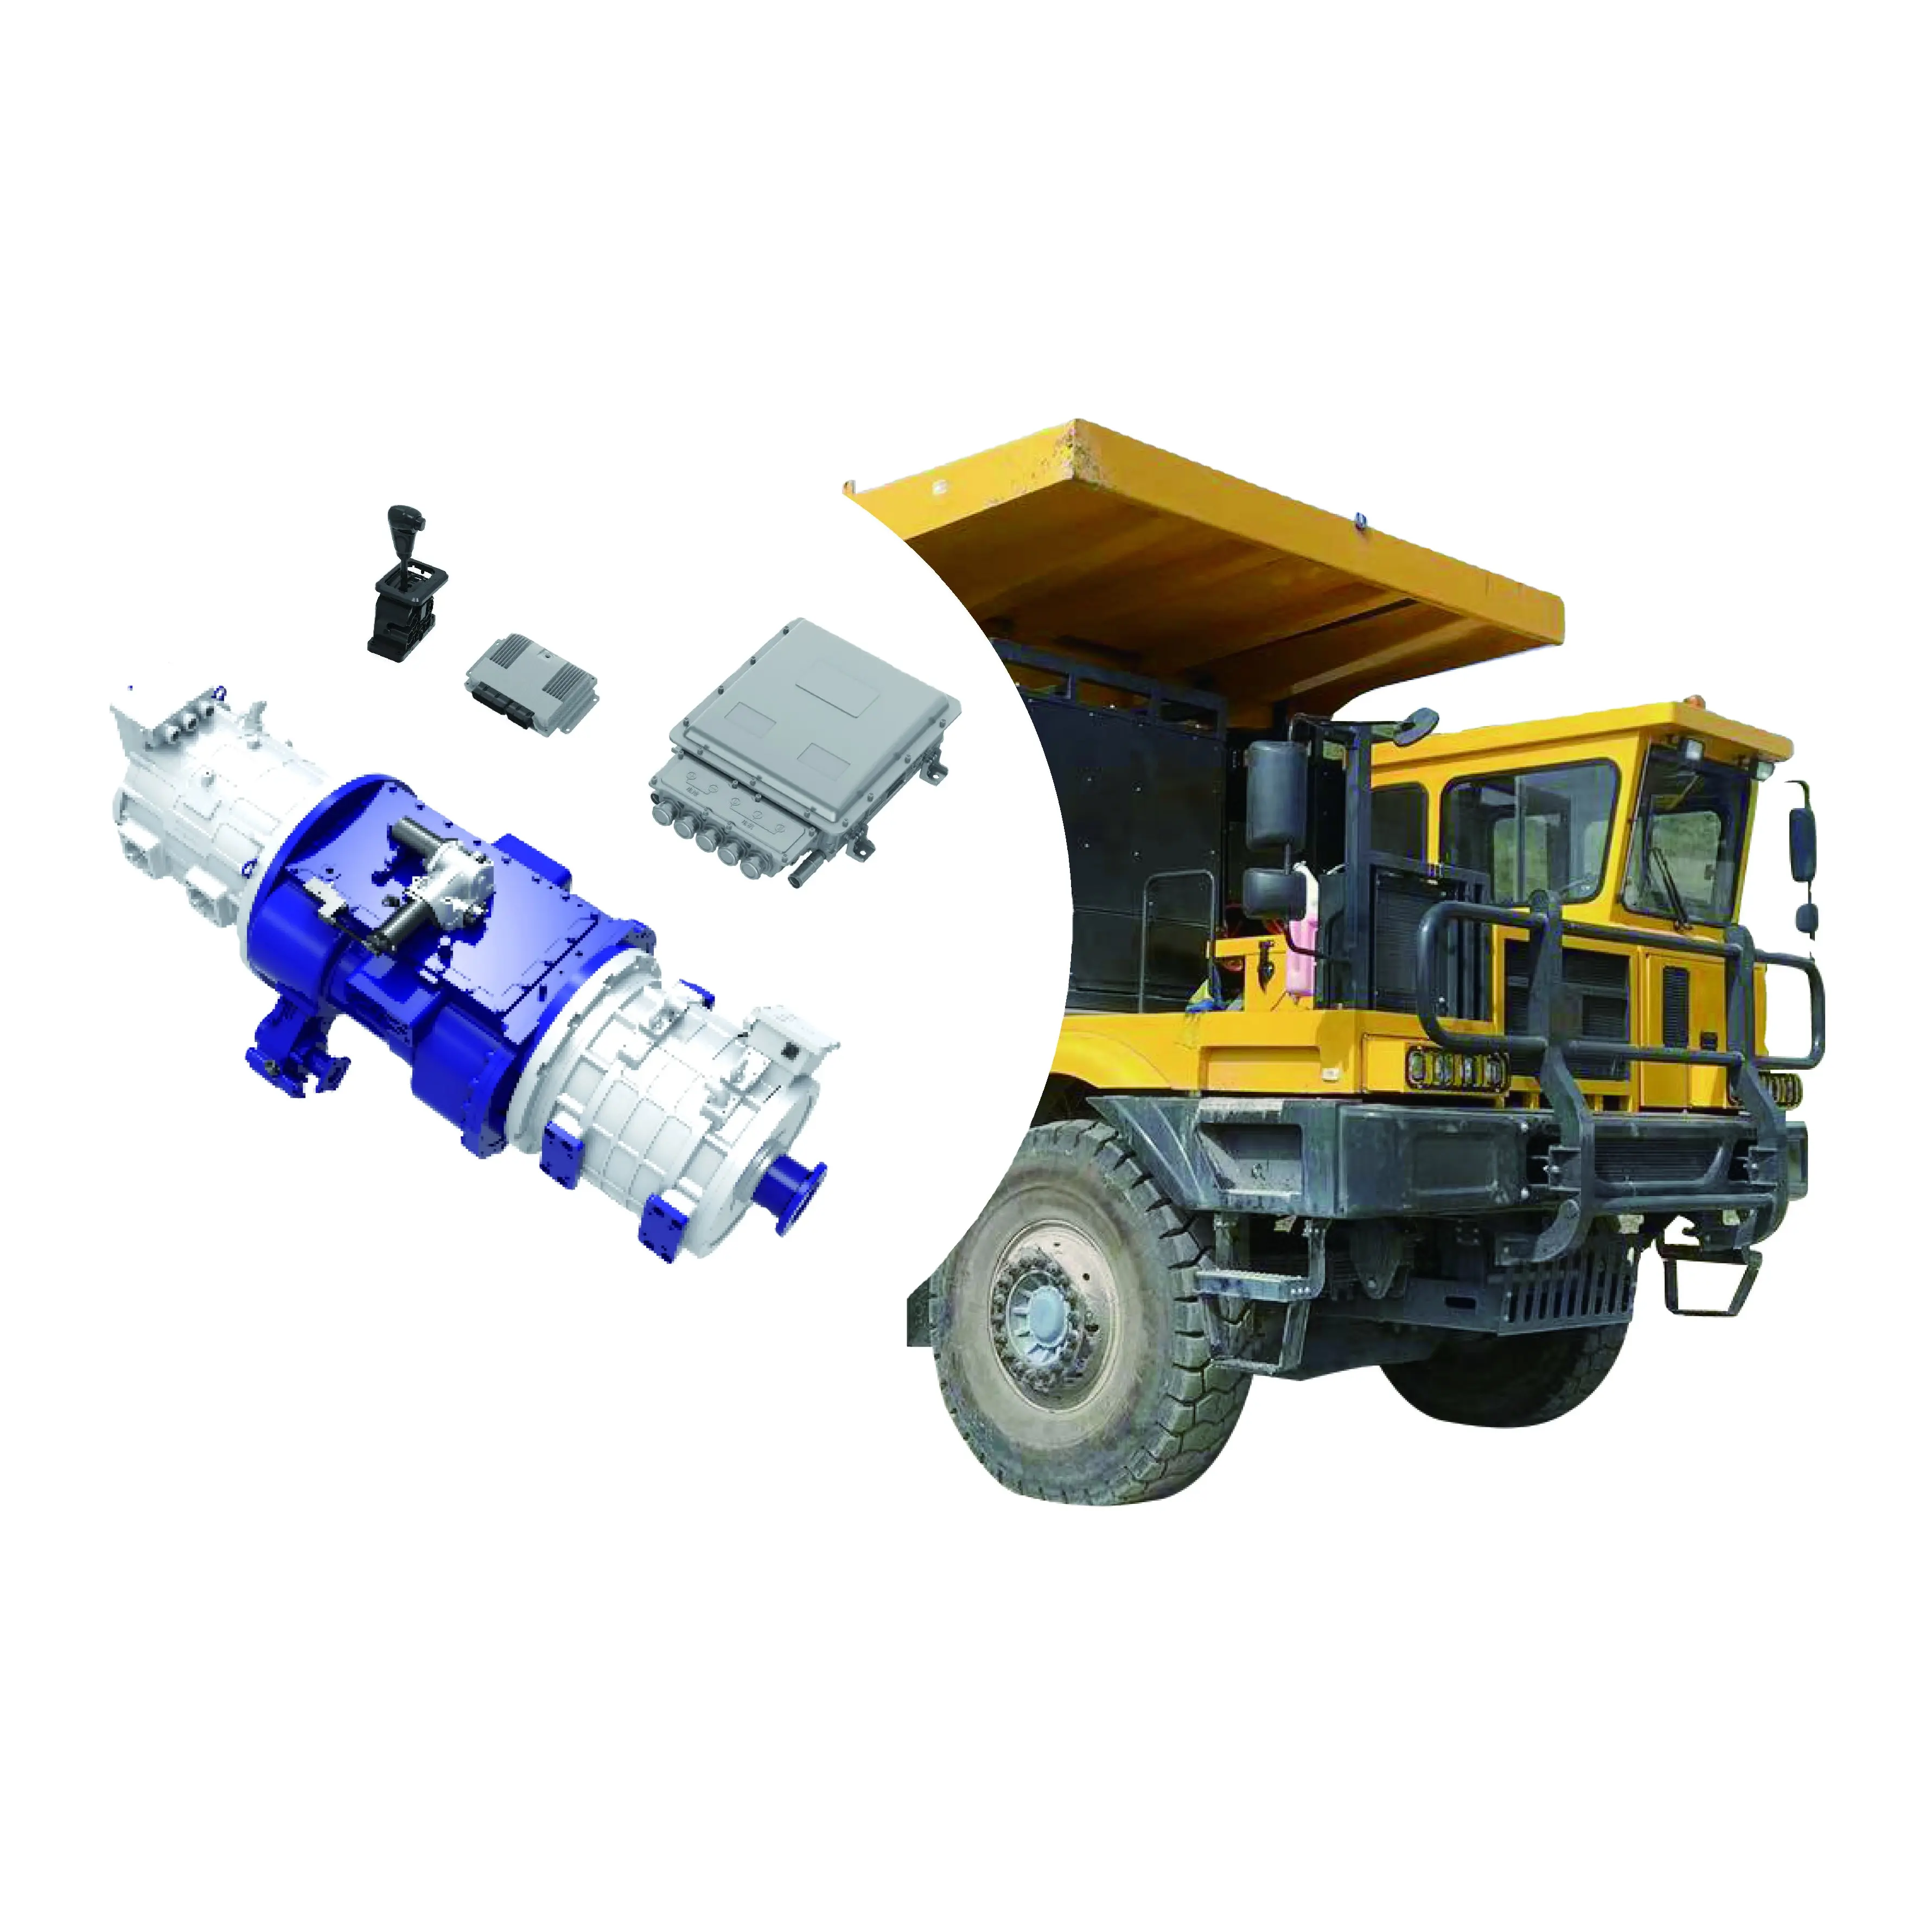 120-150 टन इलेक्ट्रिक माइनिंग ट्रक या विशेष ट्रक के लिए रिसुनपावर ईएमटी डुअल मोटर 310kW 200kW शुद्ध इलेक्ट्रिक ड्राइव सिस्टम